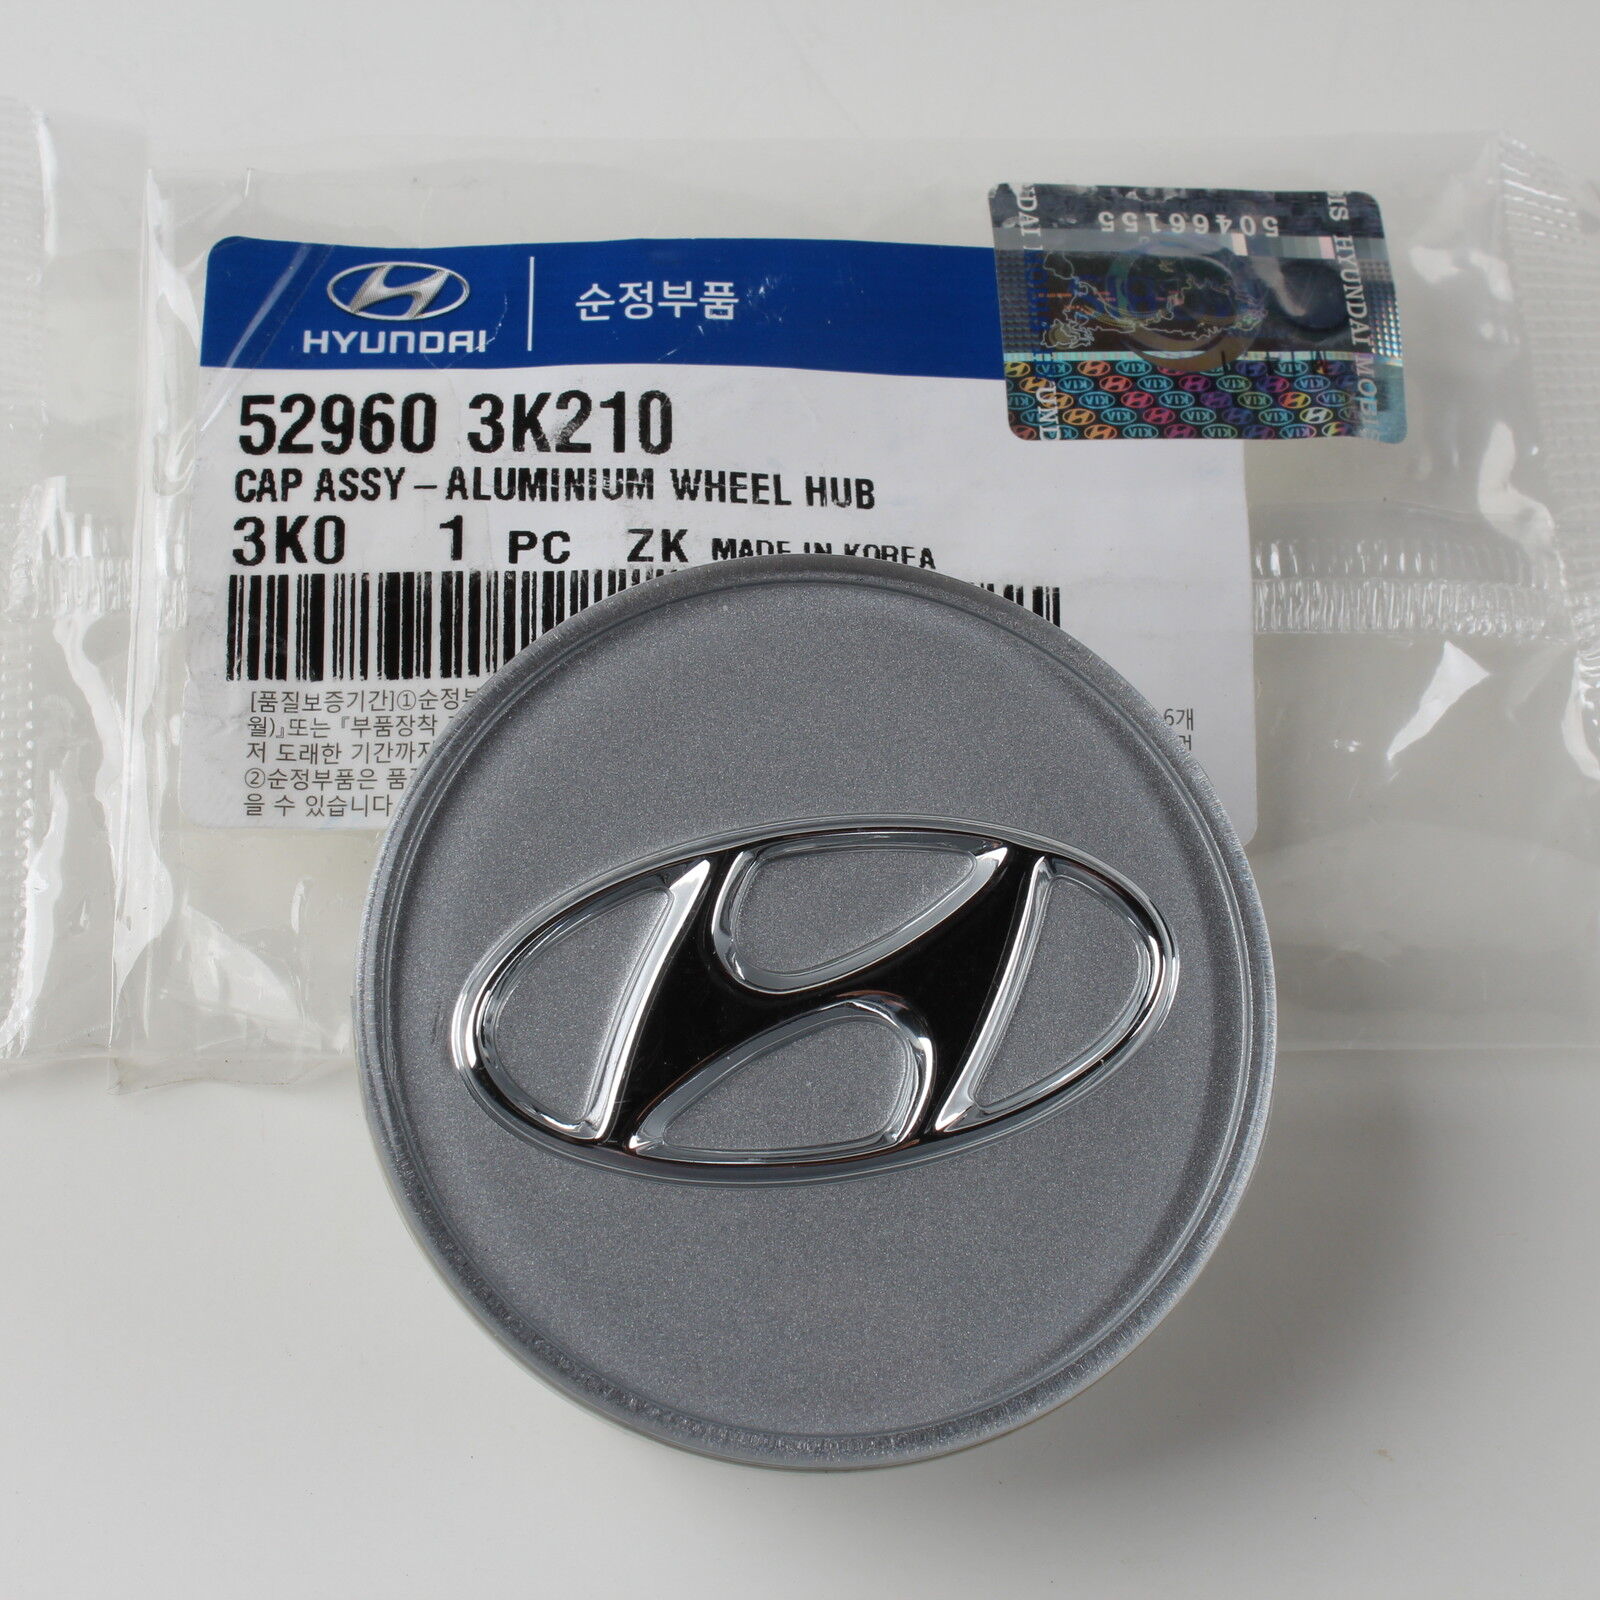 Genuine Santa Fe Wheel Center Cap 2007-12 52960-3K210 (qty=1pc) for Hyundai